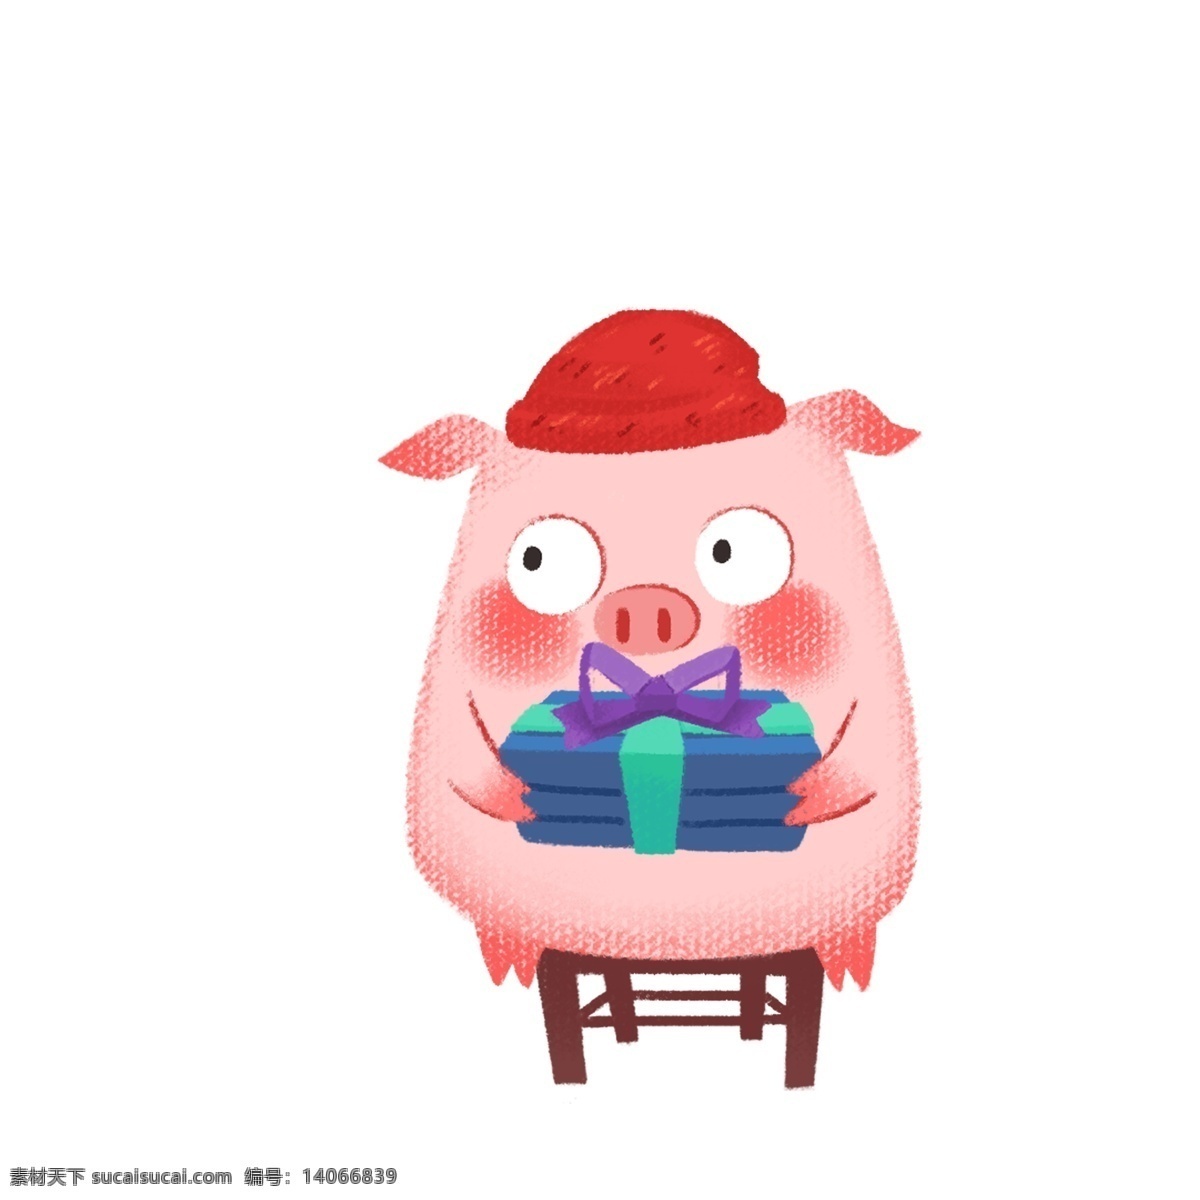 卡通 可爱 礼物 小 猪 凳子 宠物 猪年形象 小猪形象 动物萌宠 小猪猪